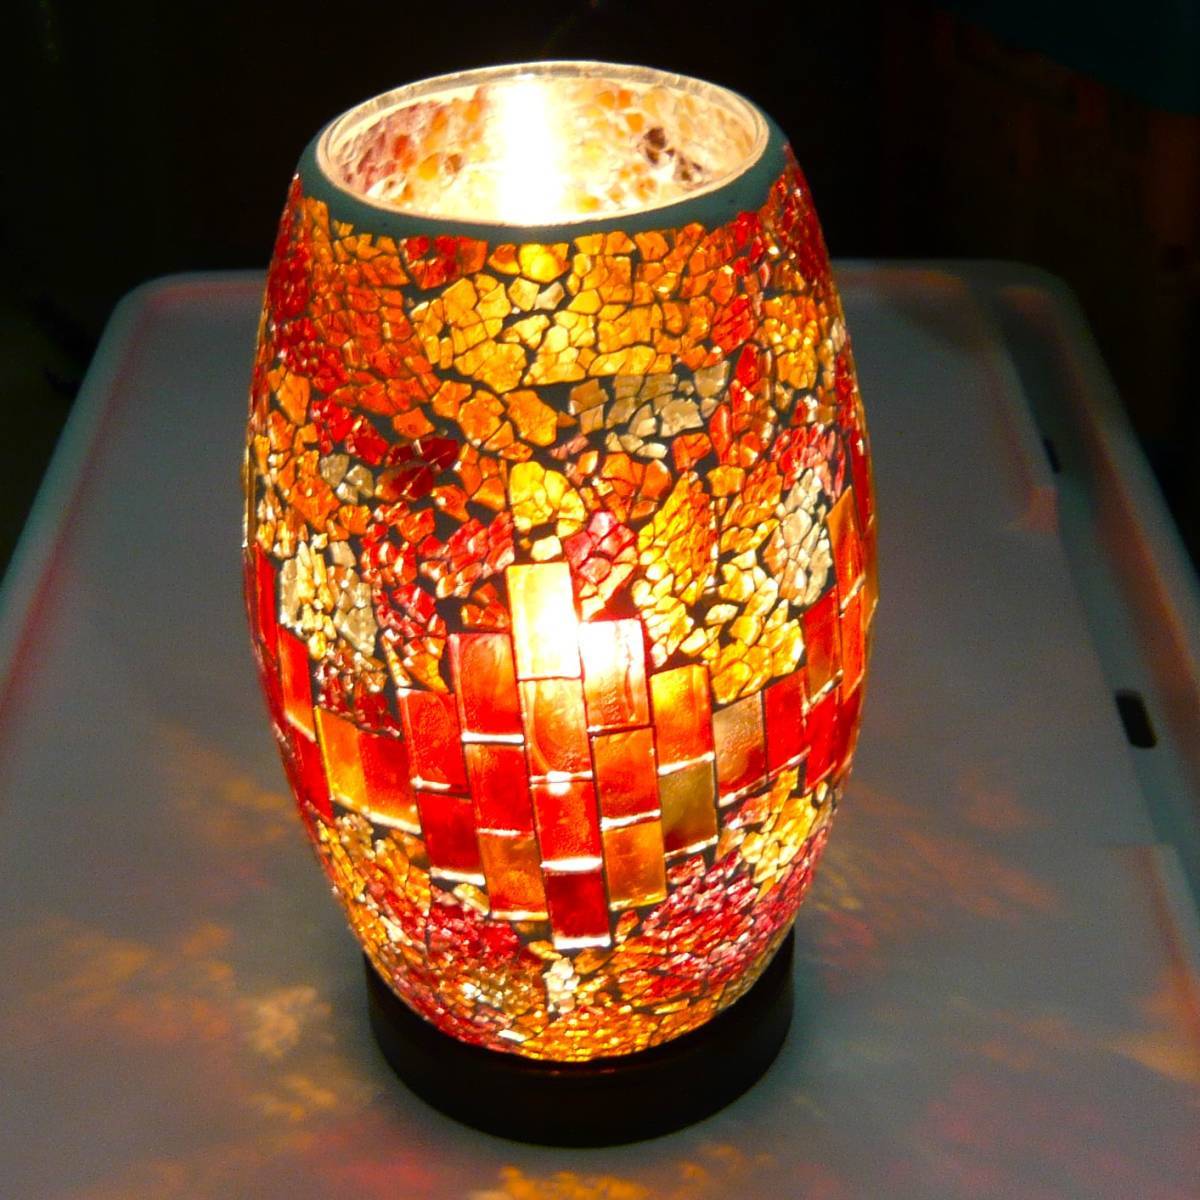 Lampe mosaïque Klimt vitrail rouge éclairage indirect lampe lampadaire lumière mosaïque verre vitrail rouge, artisanat, artisanat, artisanat en verre, Vitrail